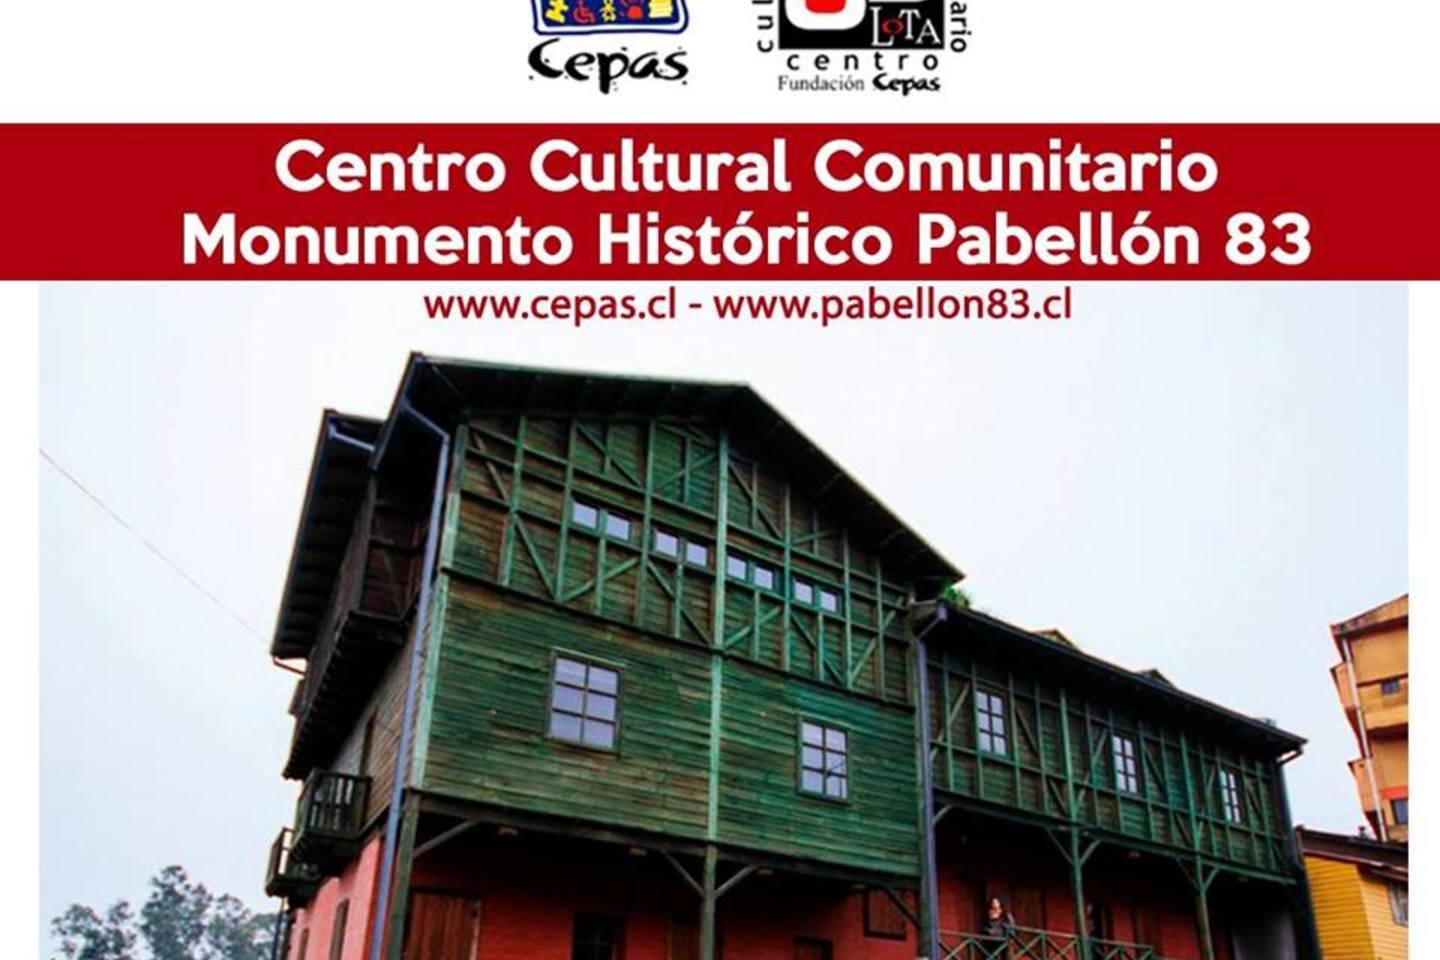 Centro Cultural Comunitario Monumento Histórico Pabellón 83